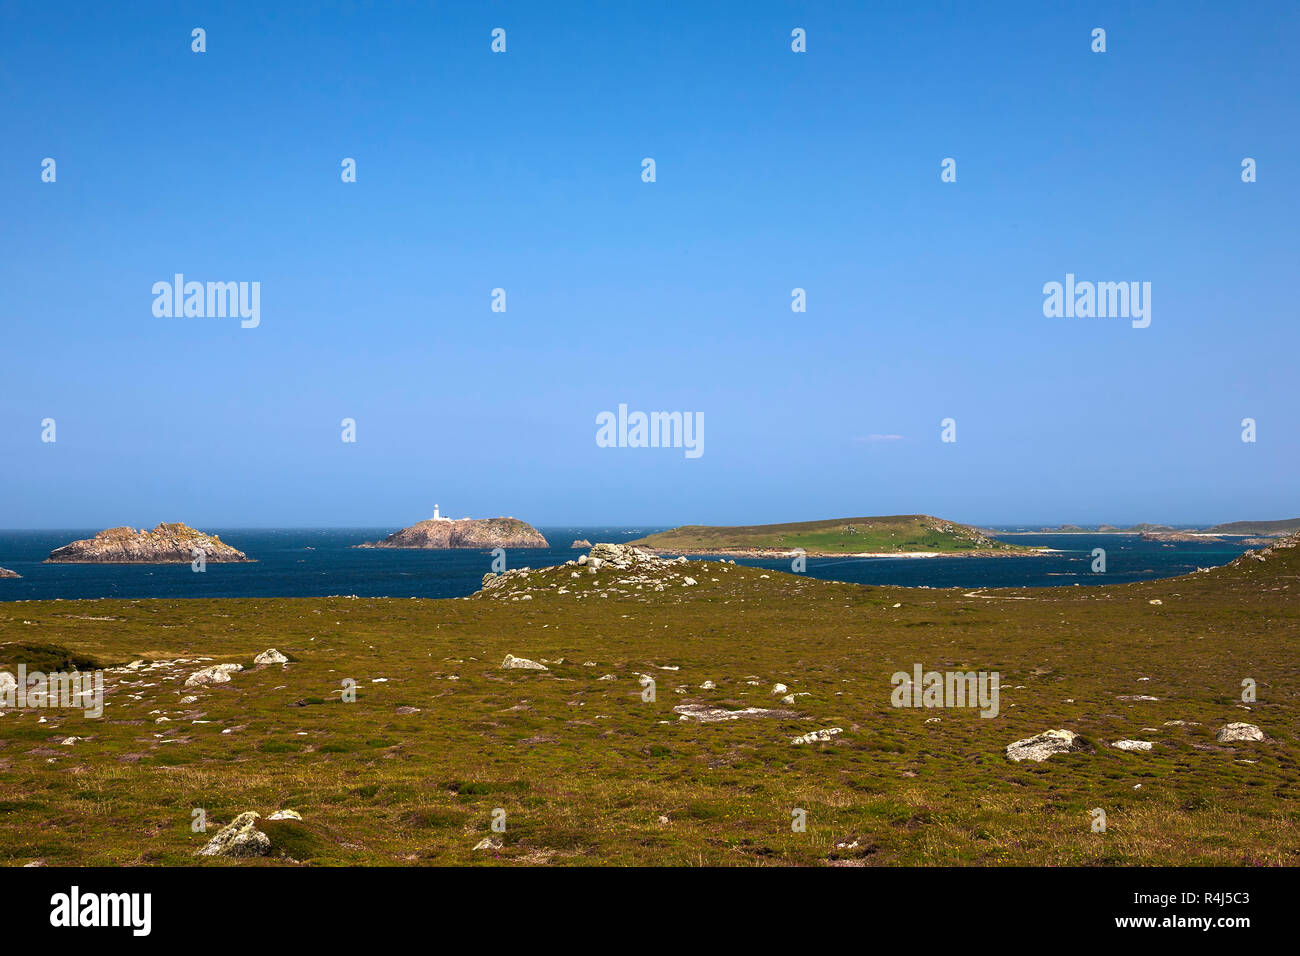 Die Inseln im Nordosten von gimble Point, Tresco: Männer-a-vaur, Round Island und St. Helen's, Scilly-inseln, Großbritannien Stockfoto